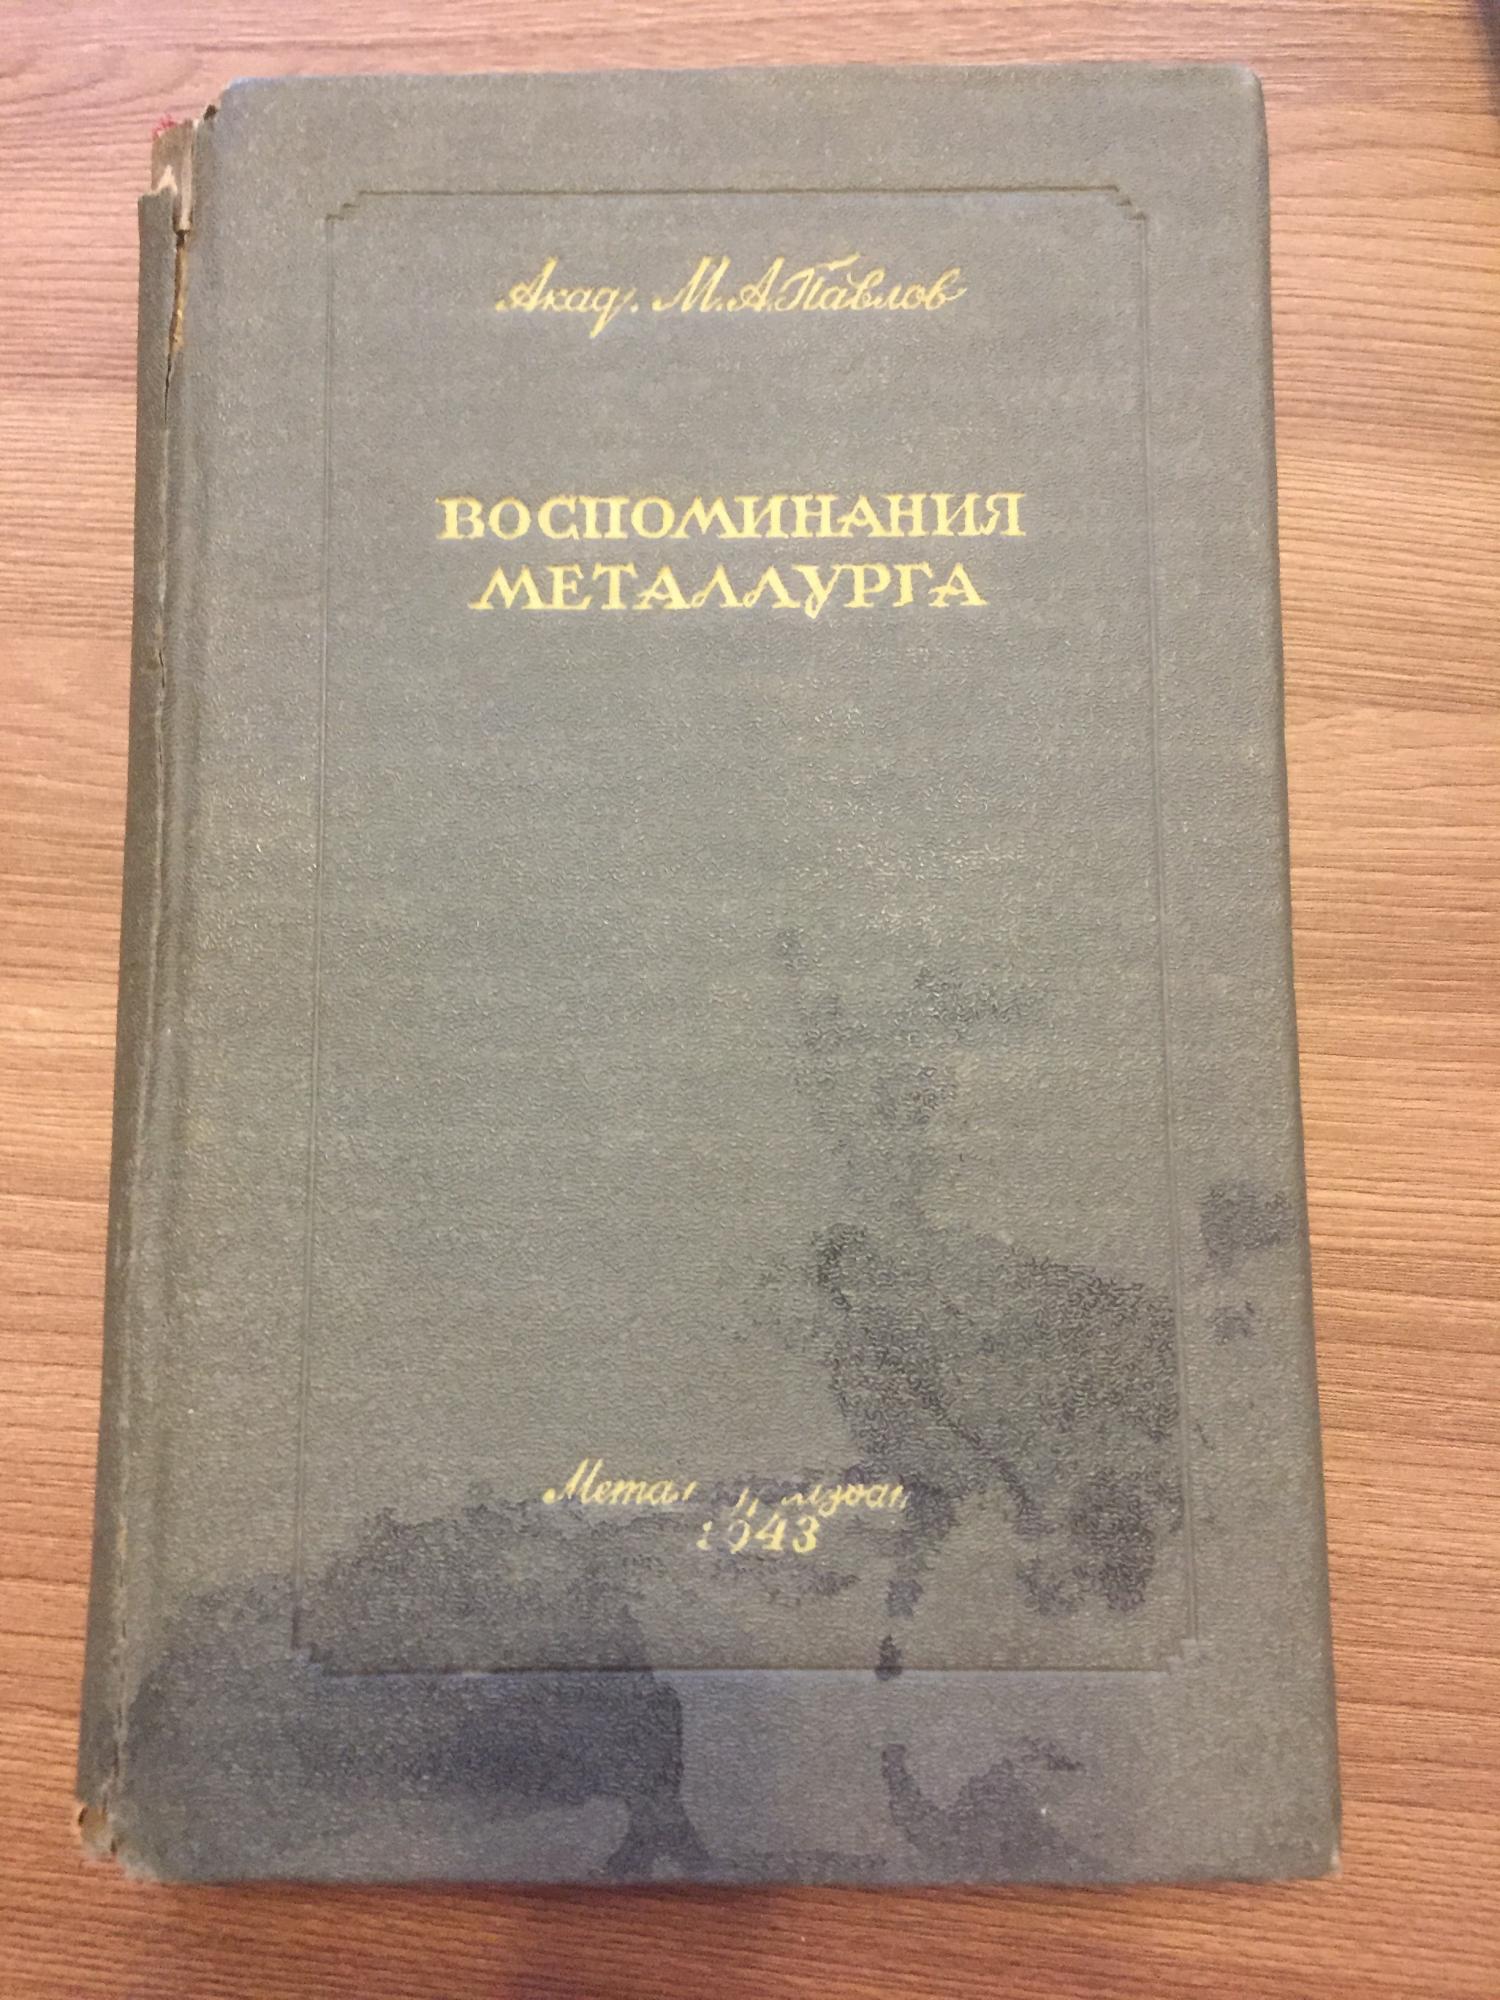 Книга « Воспоминания металлурга» в Москве 89771824945 купить 1